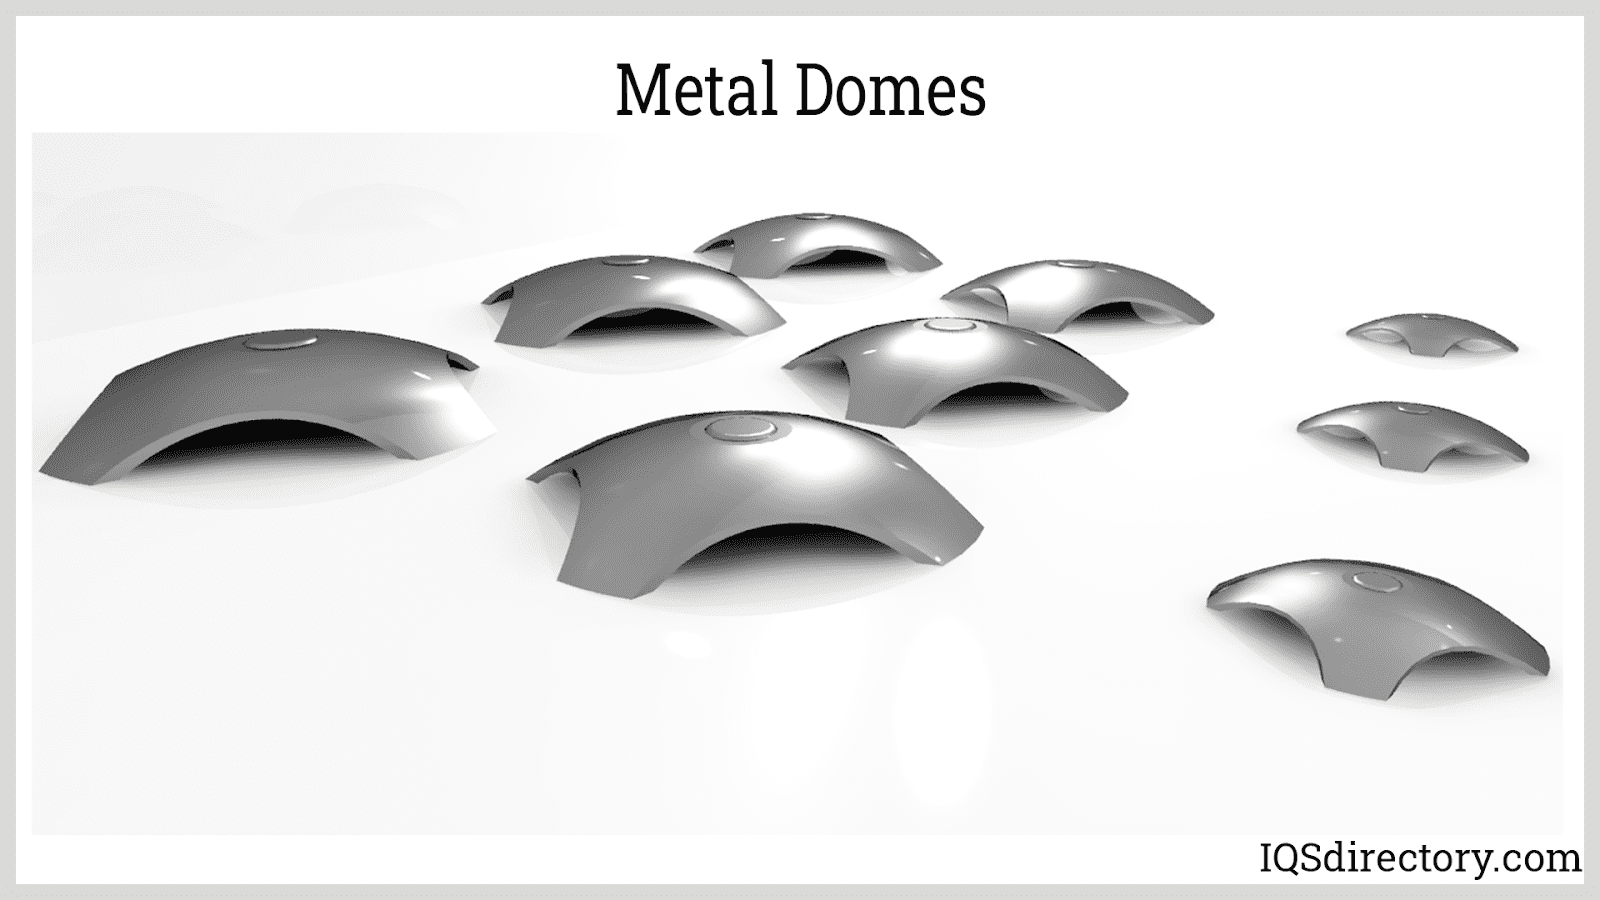 Metal Domes